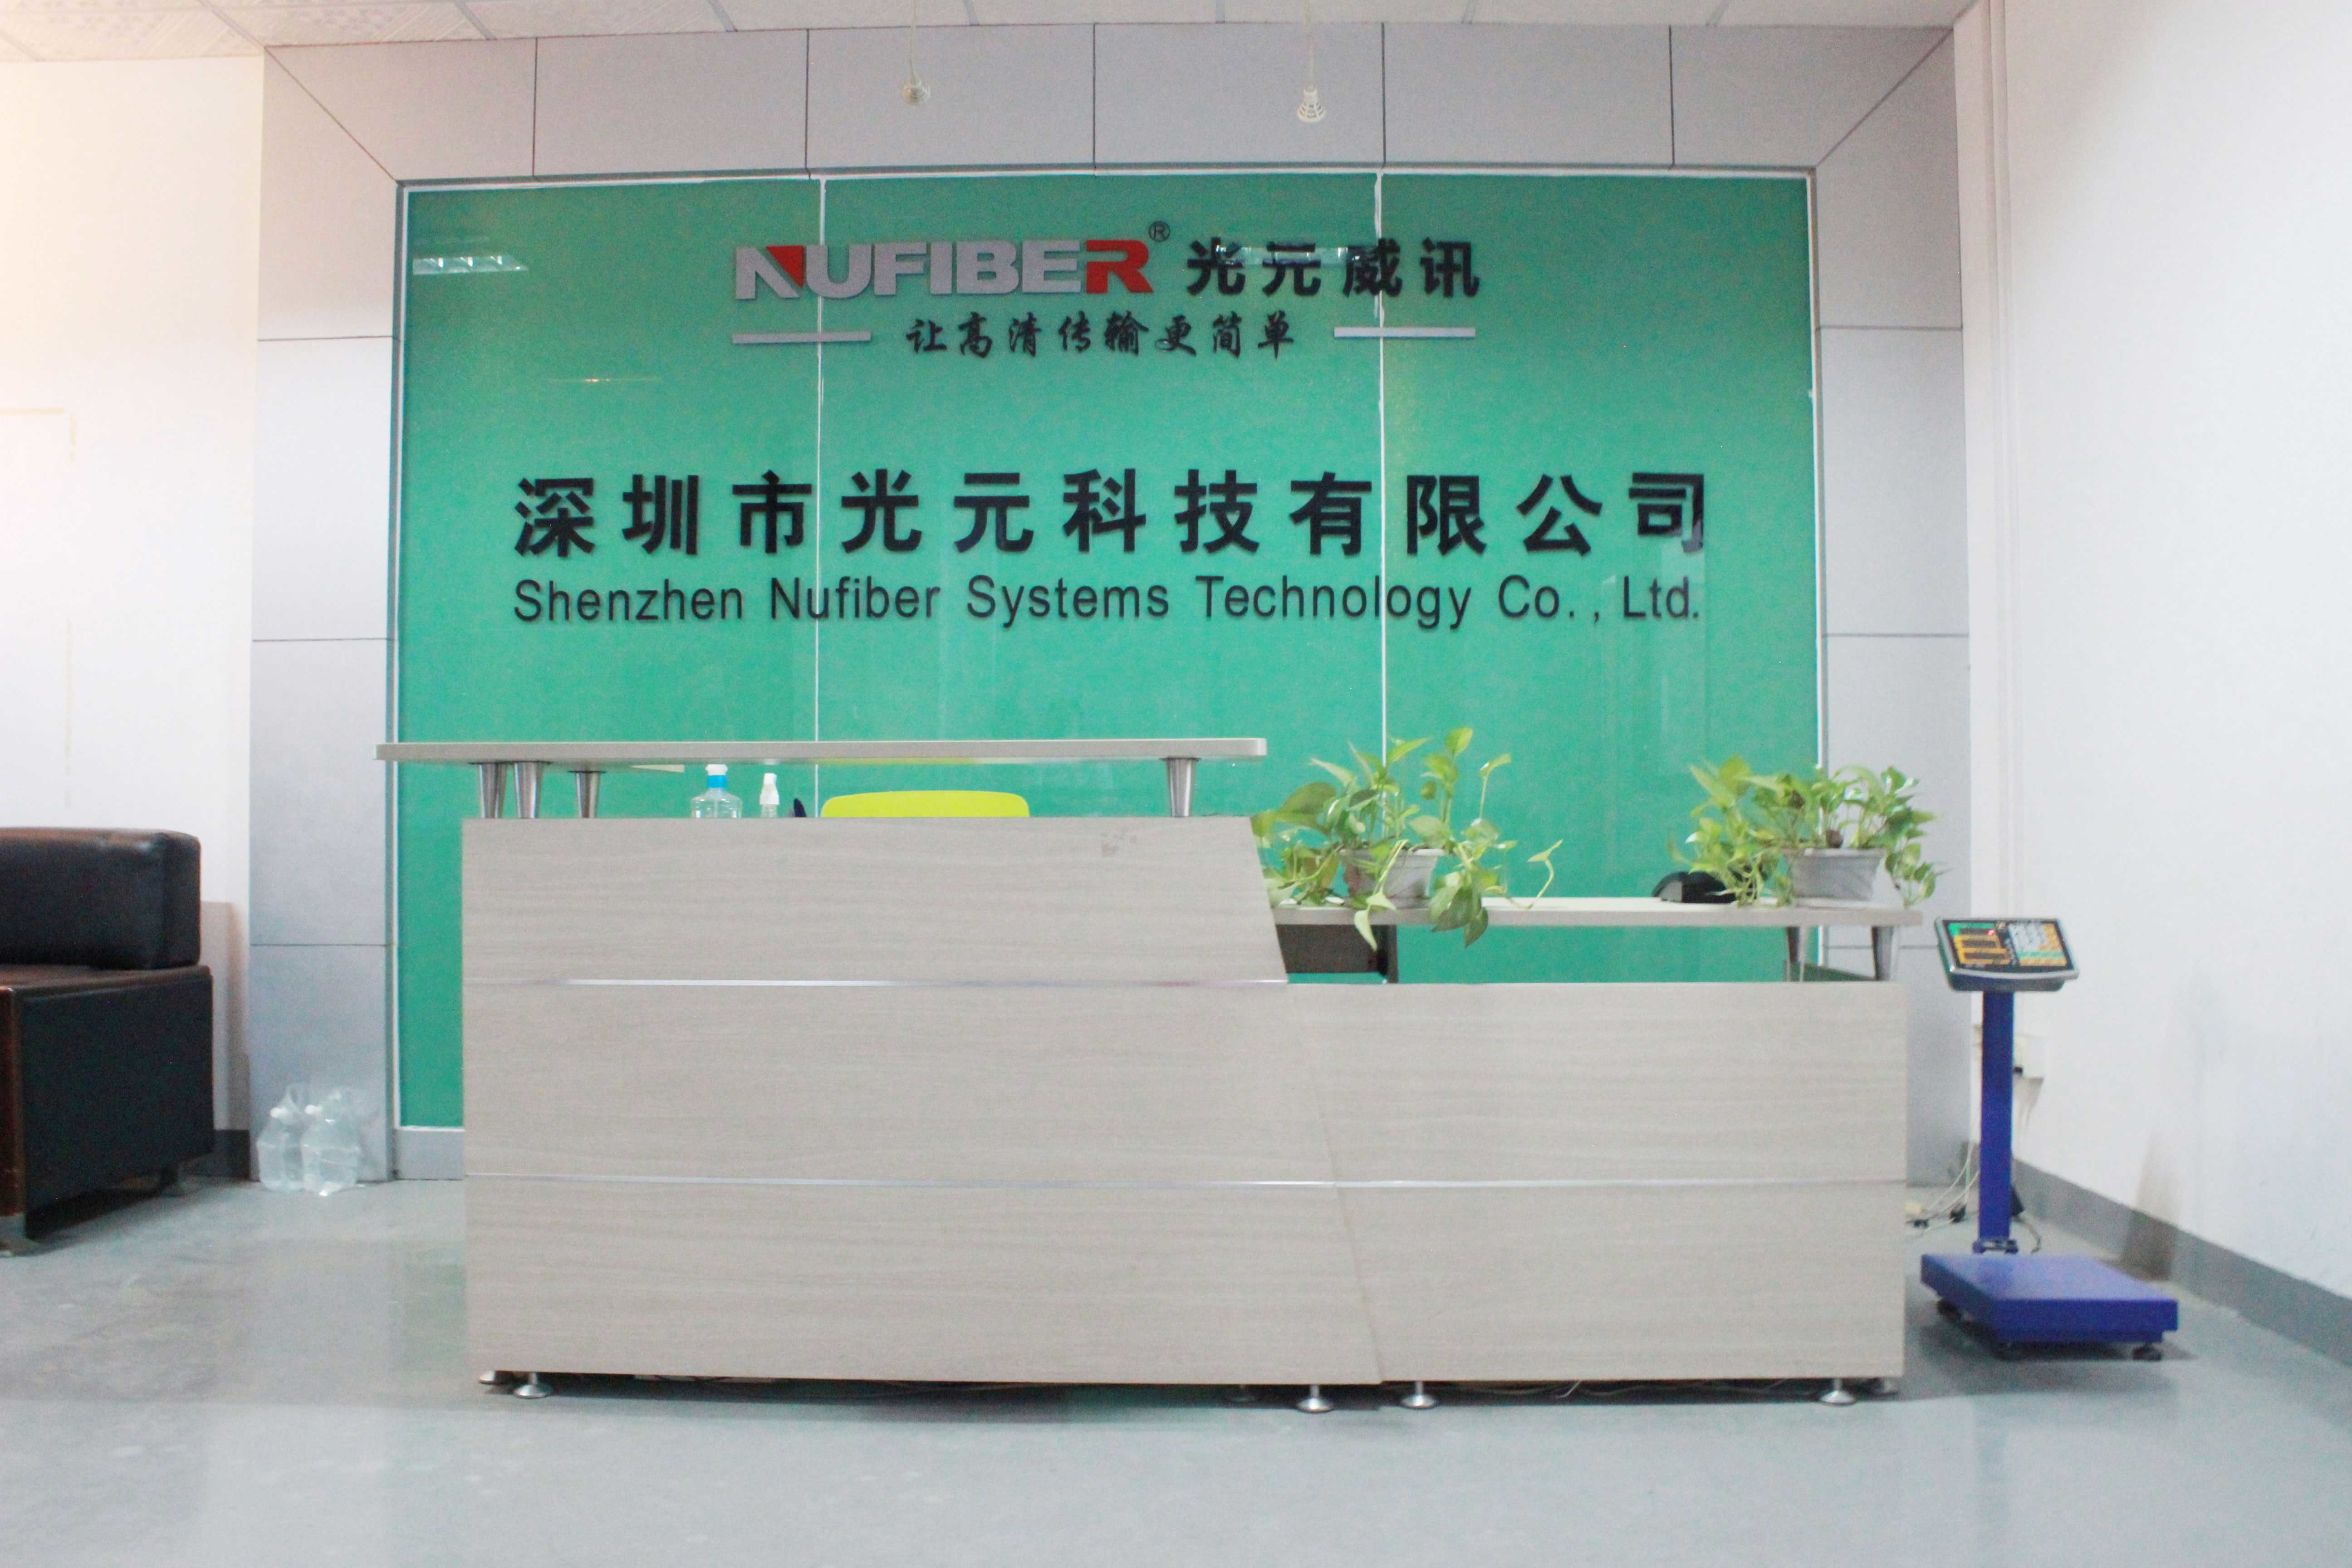 Chine Shenzhen Nufiber Systems Technology Co., Ltd. Profil de la société